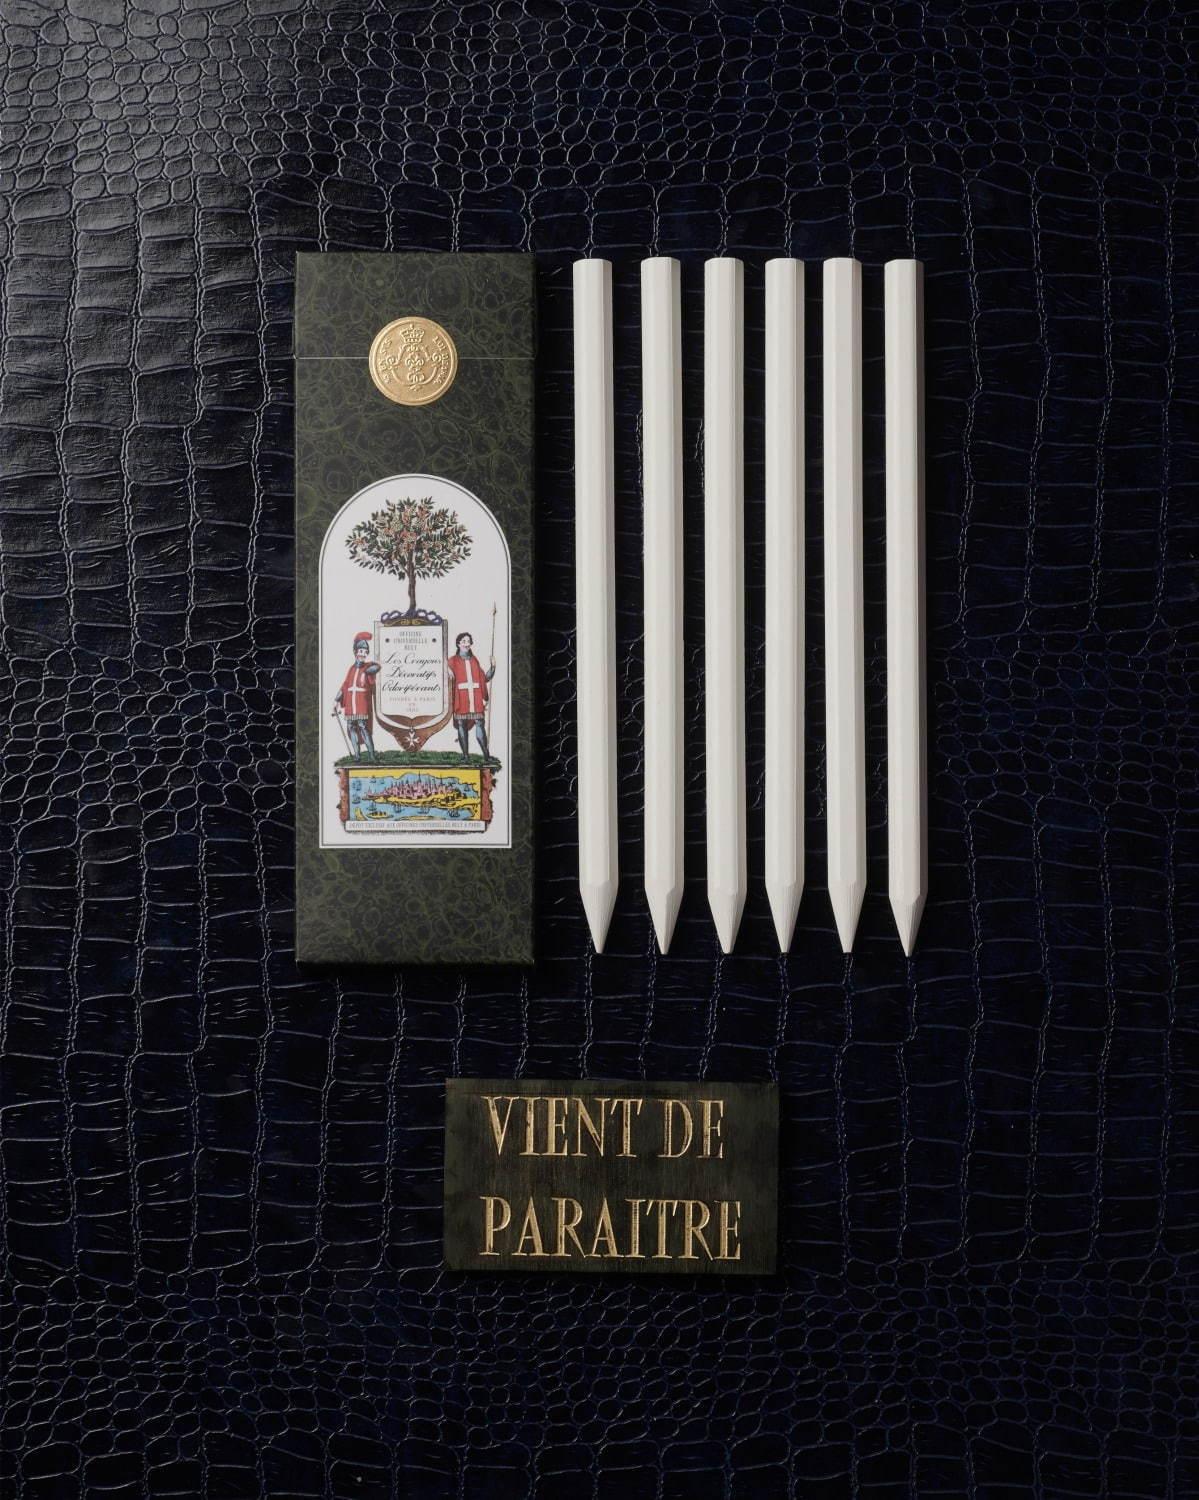 オフィシーヌ・ユニヴェルセル・ビュリー“鉛筆型”ディフューザー、好みの香りを染み込ませて コピー